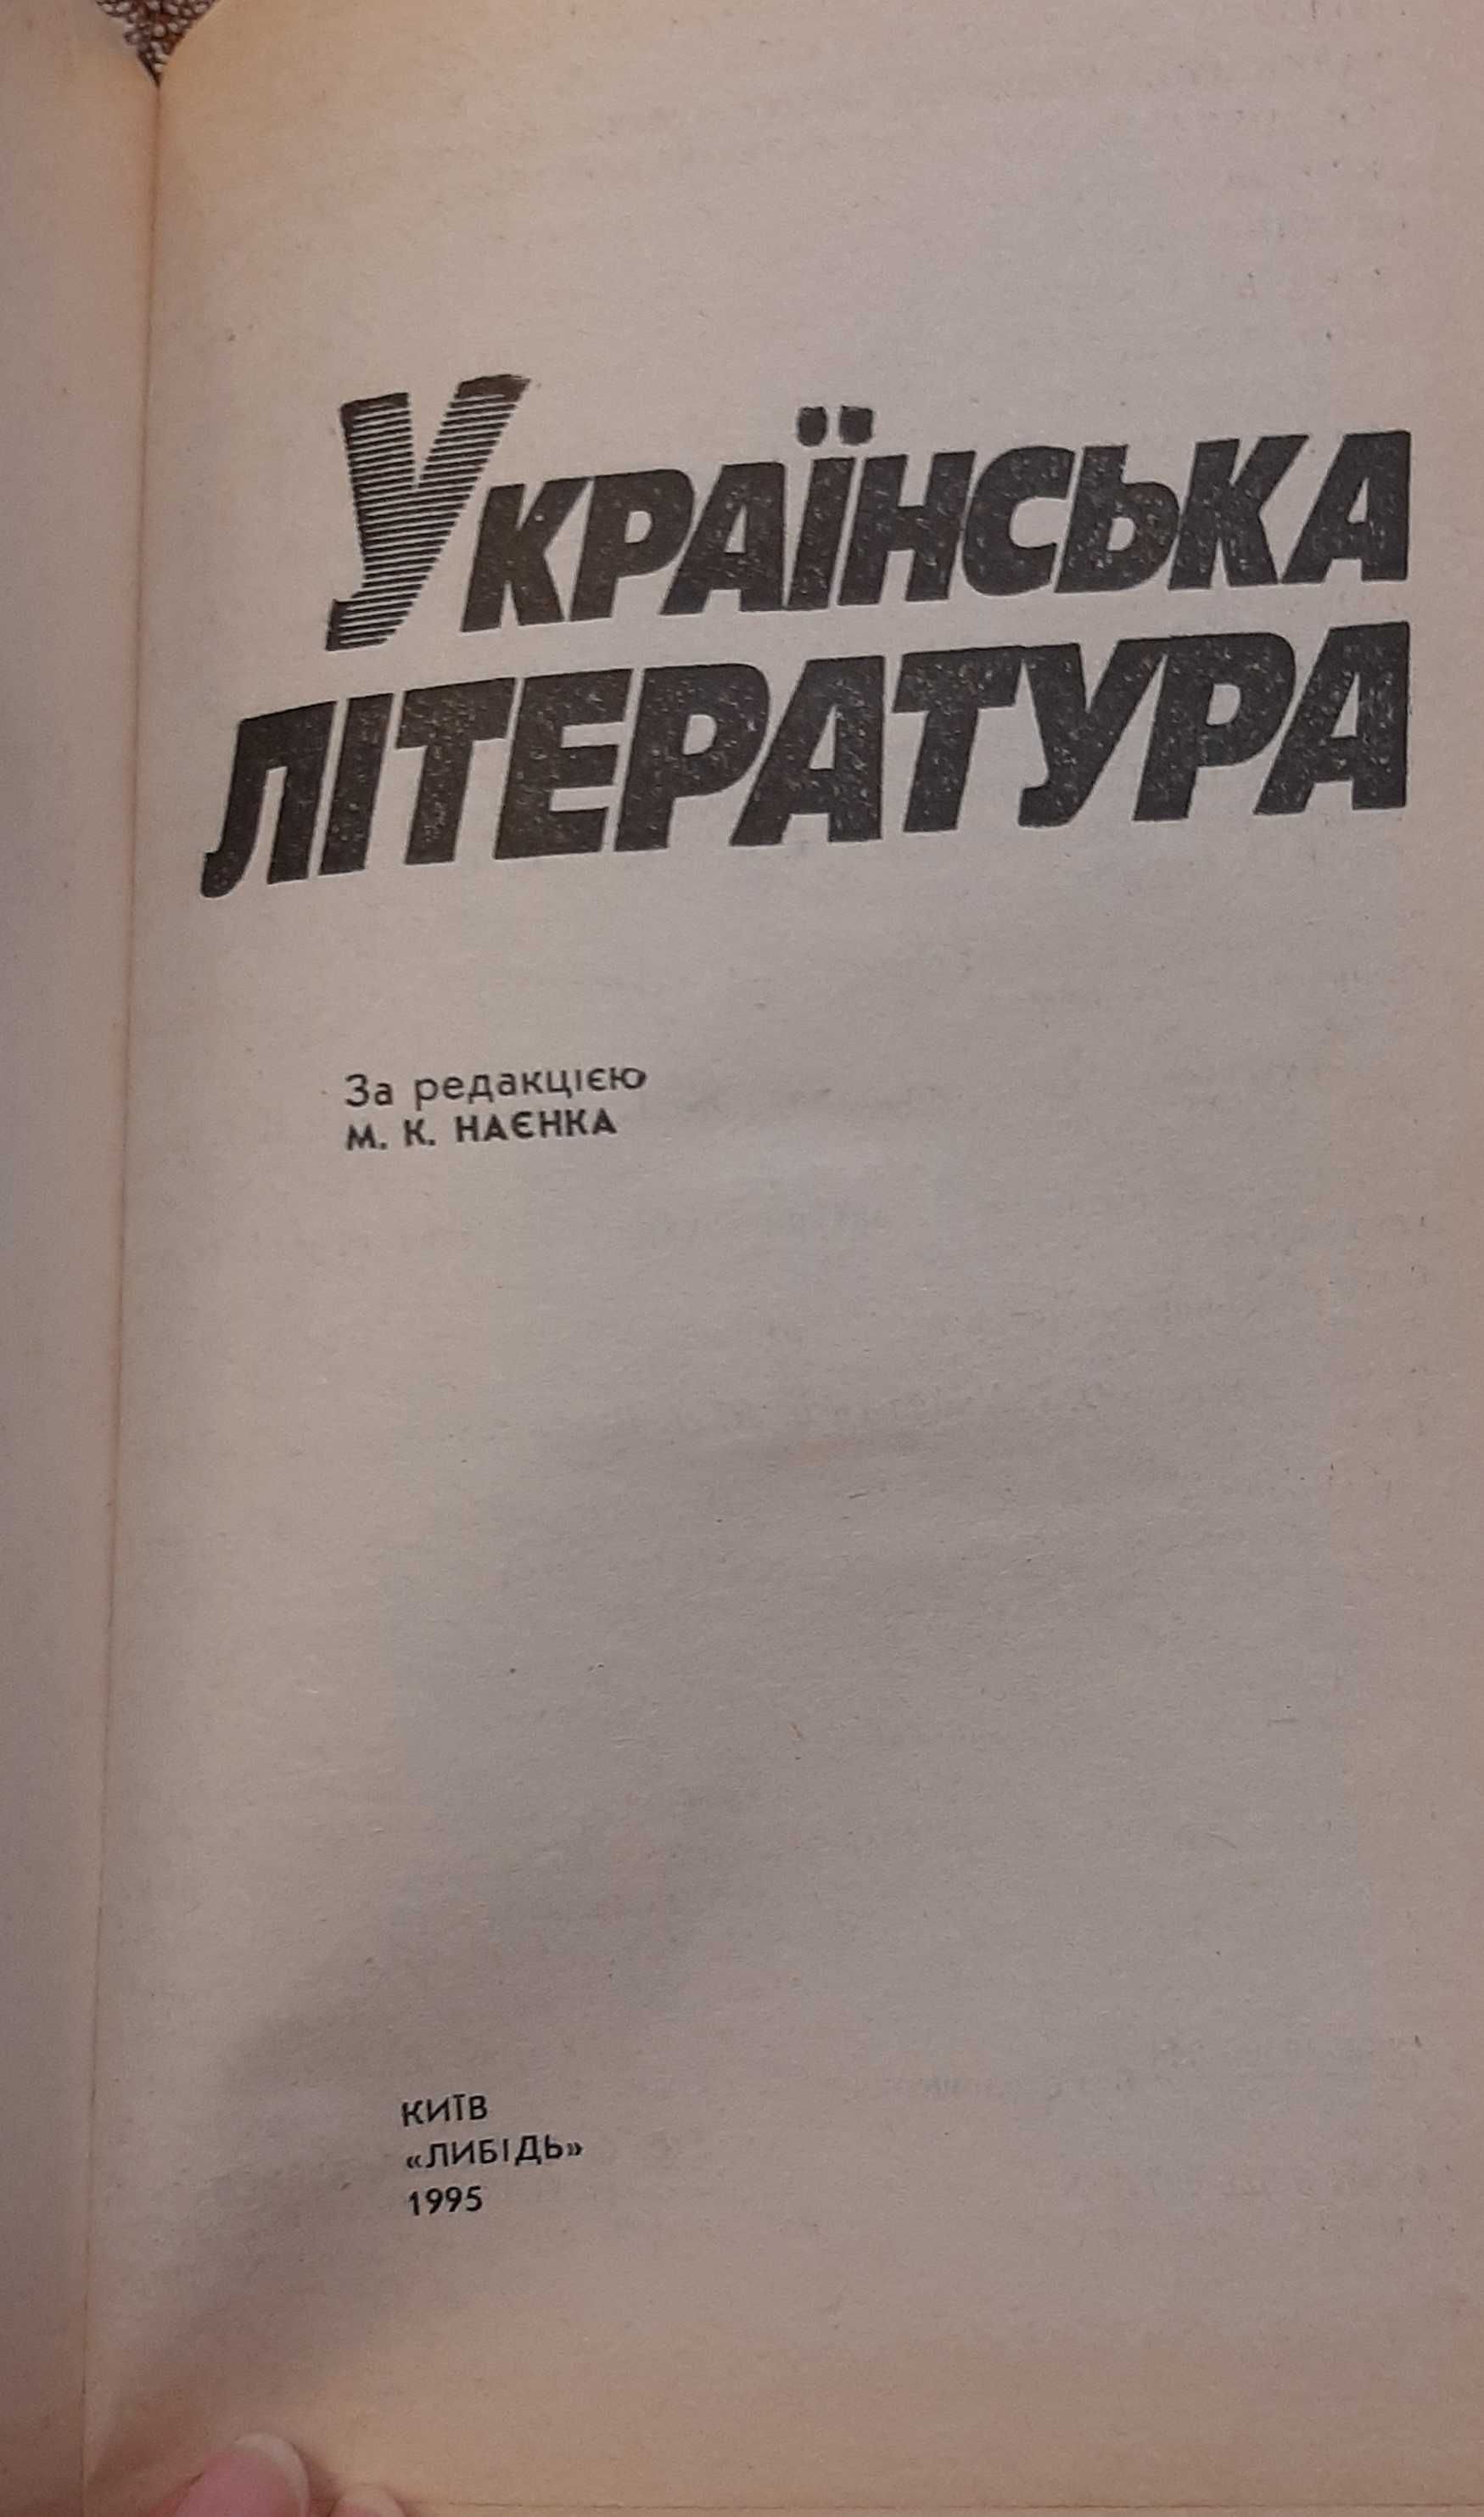 Українська література. Посібник для старшокласників і абітурієнтів